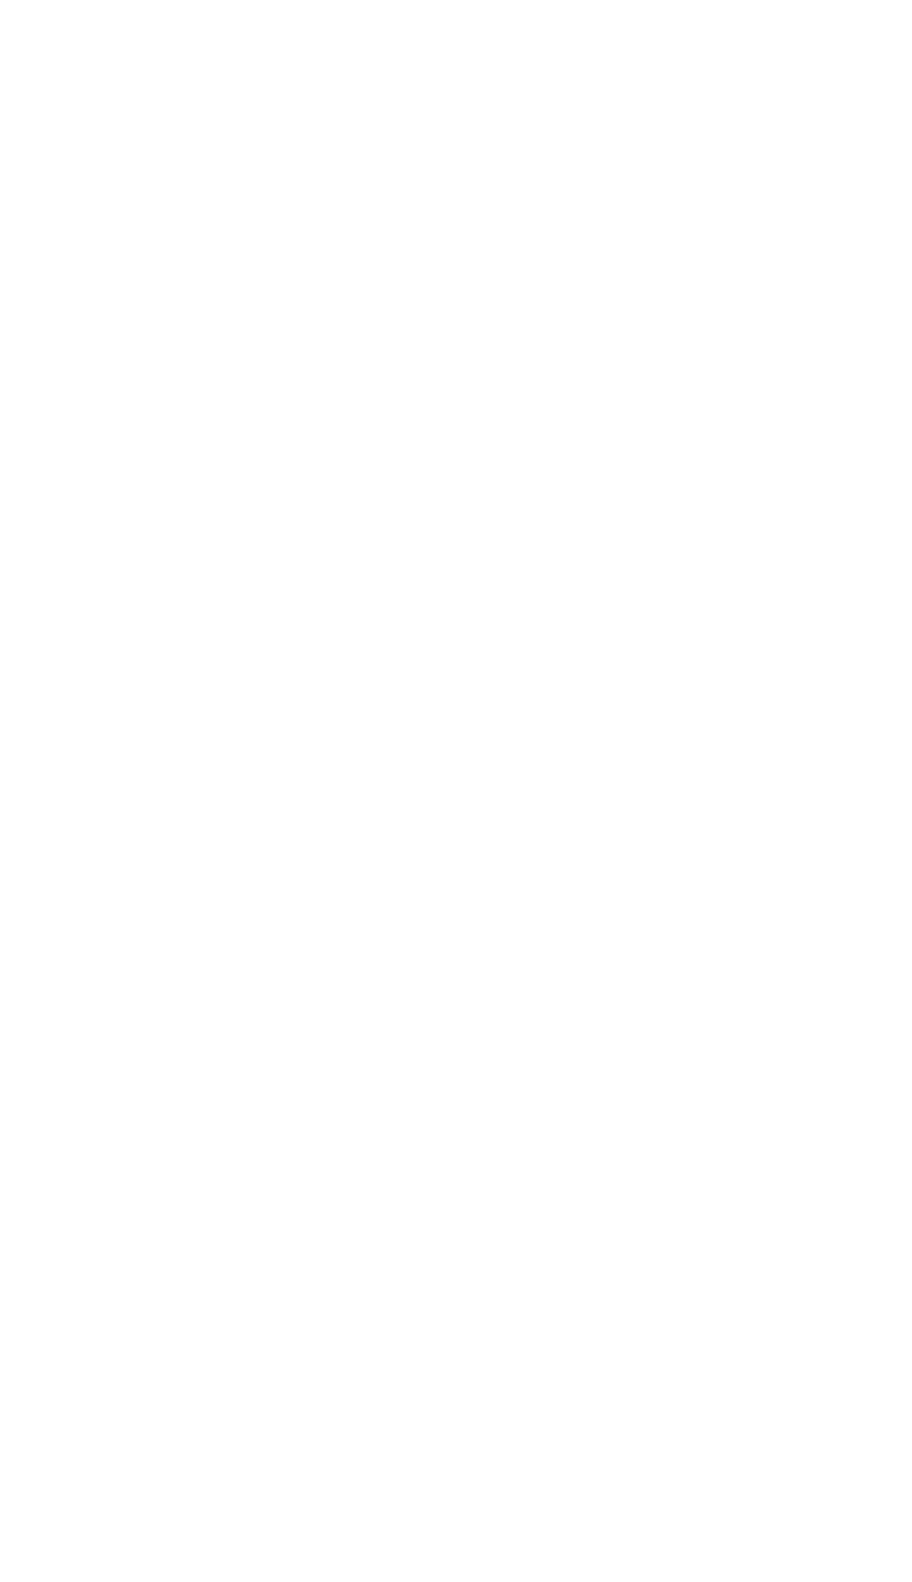 UnitedHealth logo for dark backgrounds (transparent PNG)